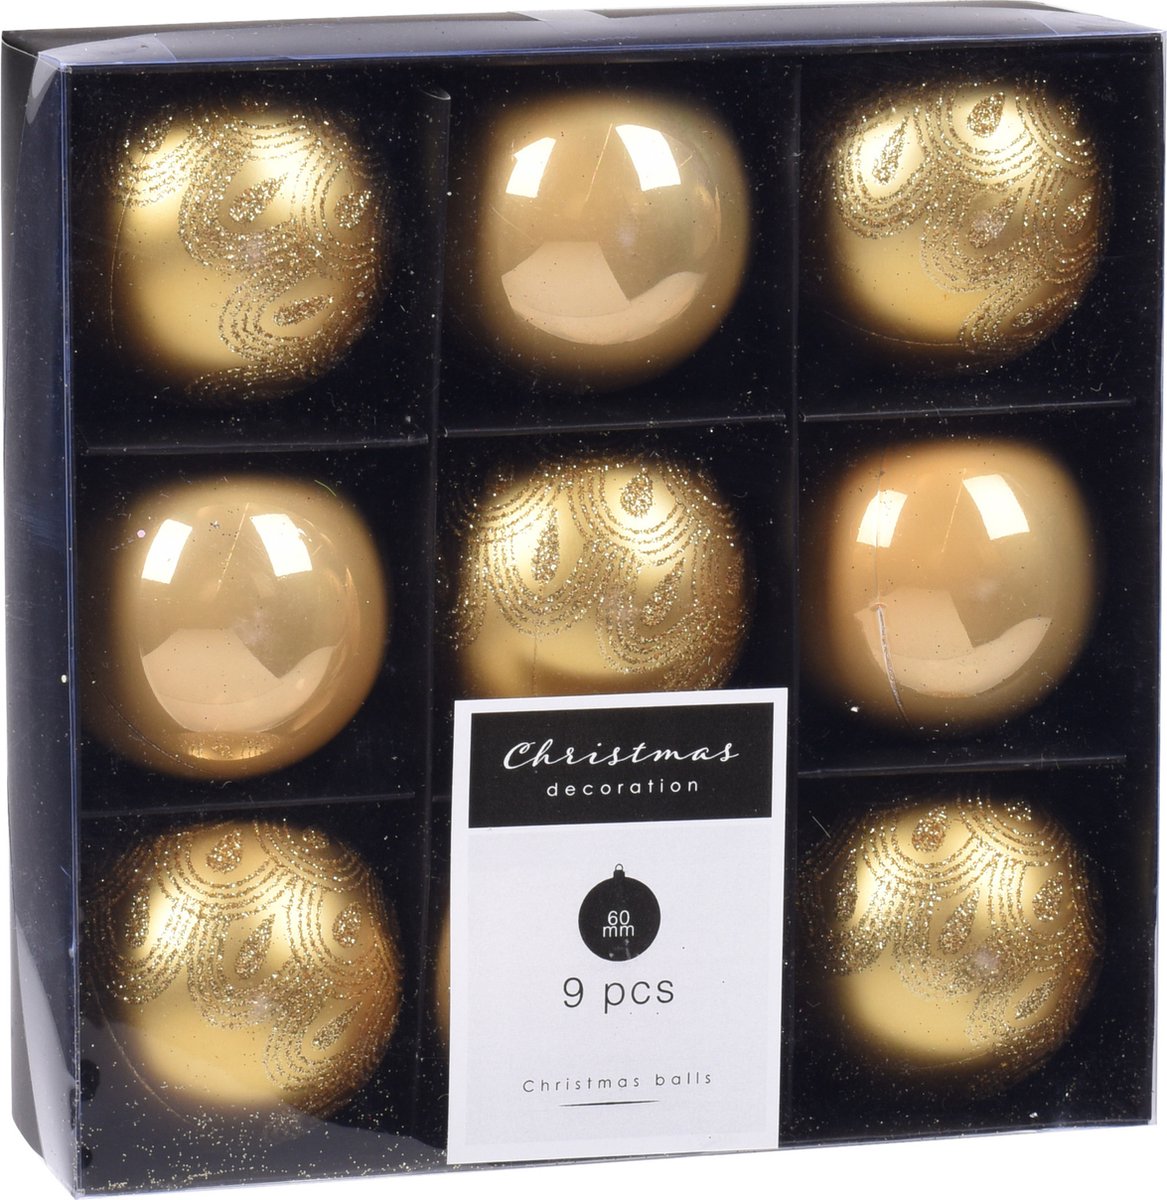 18x Kerstboomversiering luxe kunststof kerstballen goud 6 cm - Kerstversiering/kerstdecoratie goud